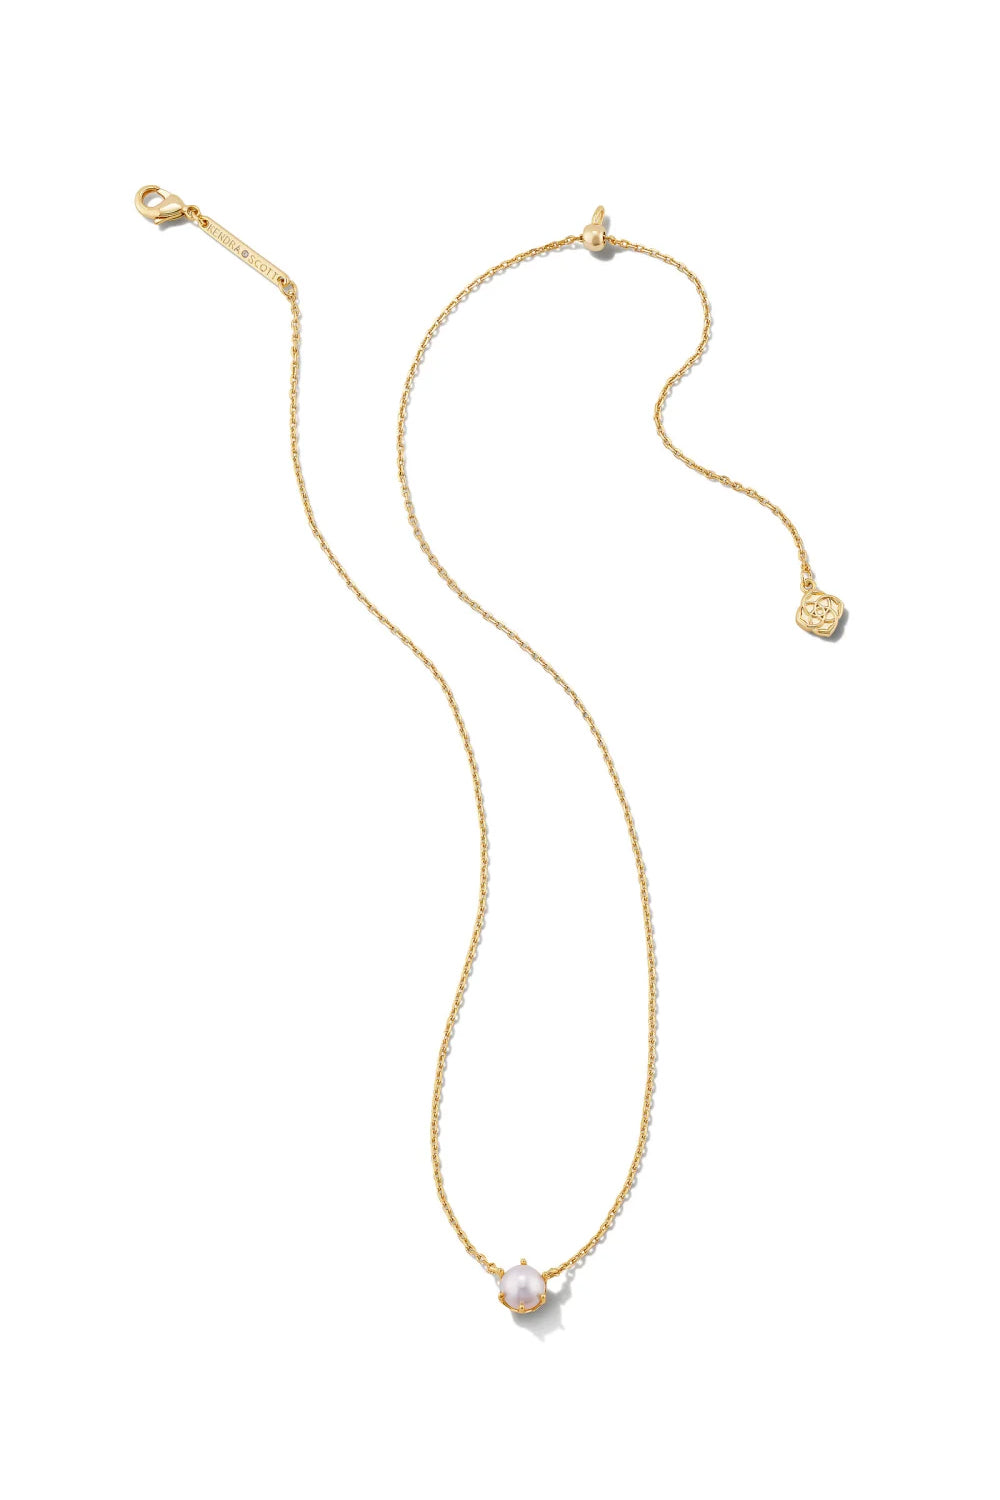 Kendra Scott: Ashton Gold Pendant Necklace - White Pearl | Makk Fashions